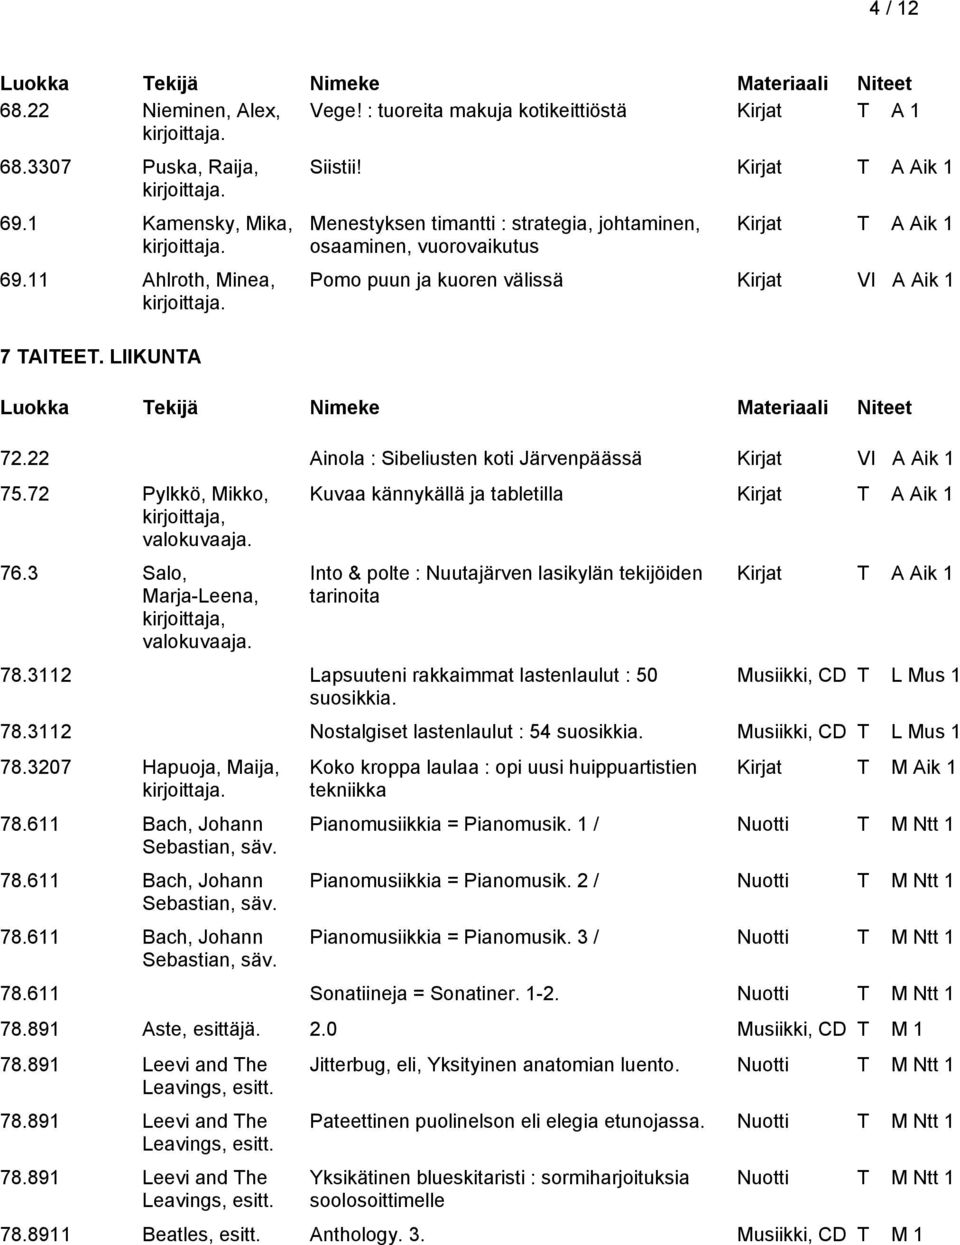 72 Pylkkö, Mikko, 76.3 Salo, Marja-Leena, Kuvaa kännykällä ja tabletilla Kirjat T A Aik 1 Into & polte : Nuutajärven lasikylän tekijöiden tarinoita 78.